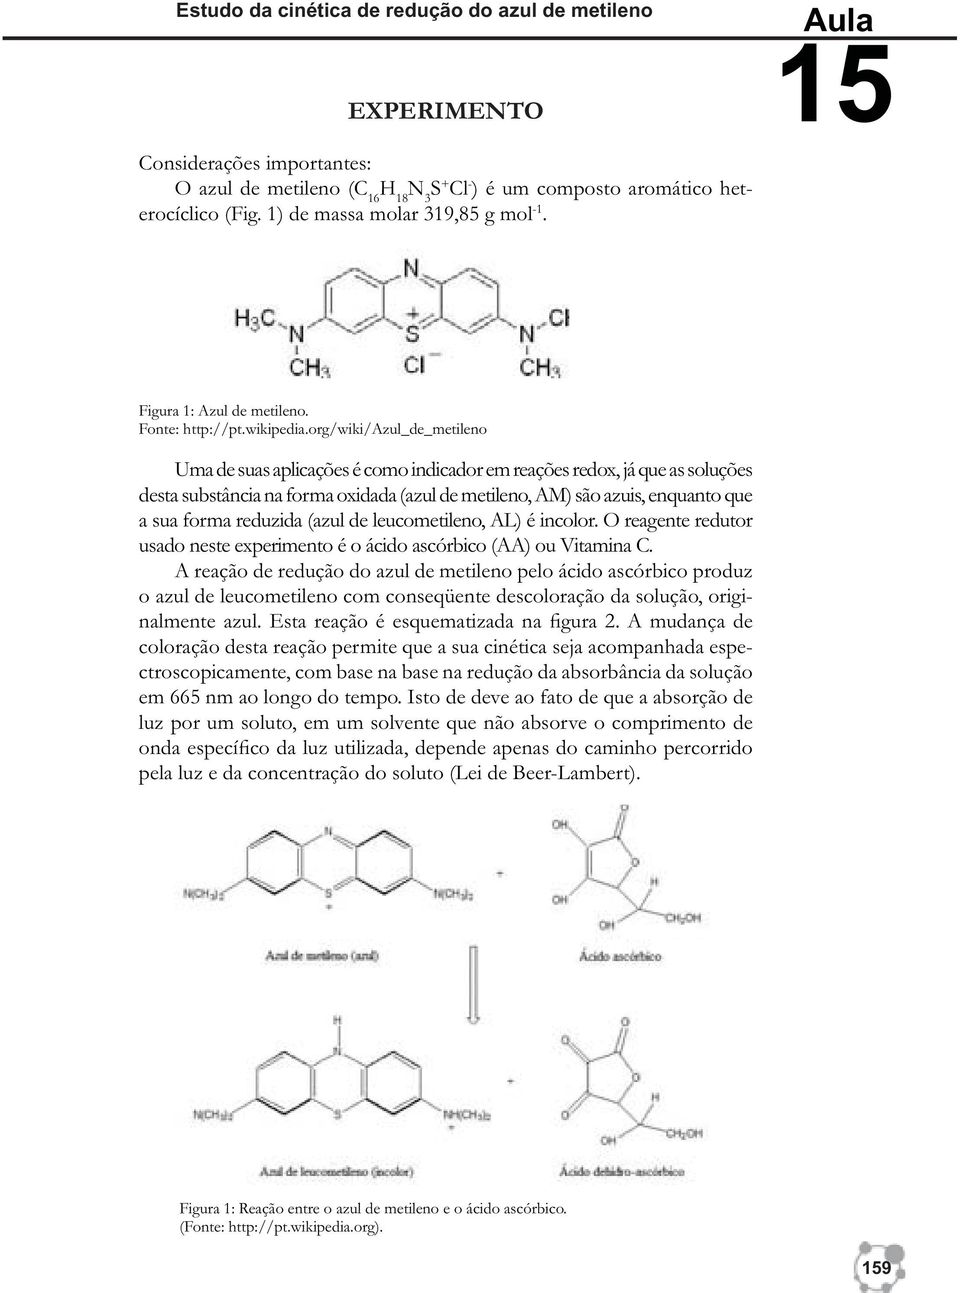 org/wiki/azul_de_metileno Uma de suas aplicações é como indicador em reações redox, já que as soluções desta substância na forma oxidada (azul de metileno, AM) são azuis, enquanto que a sua forma